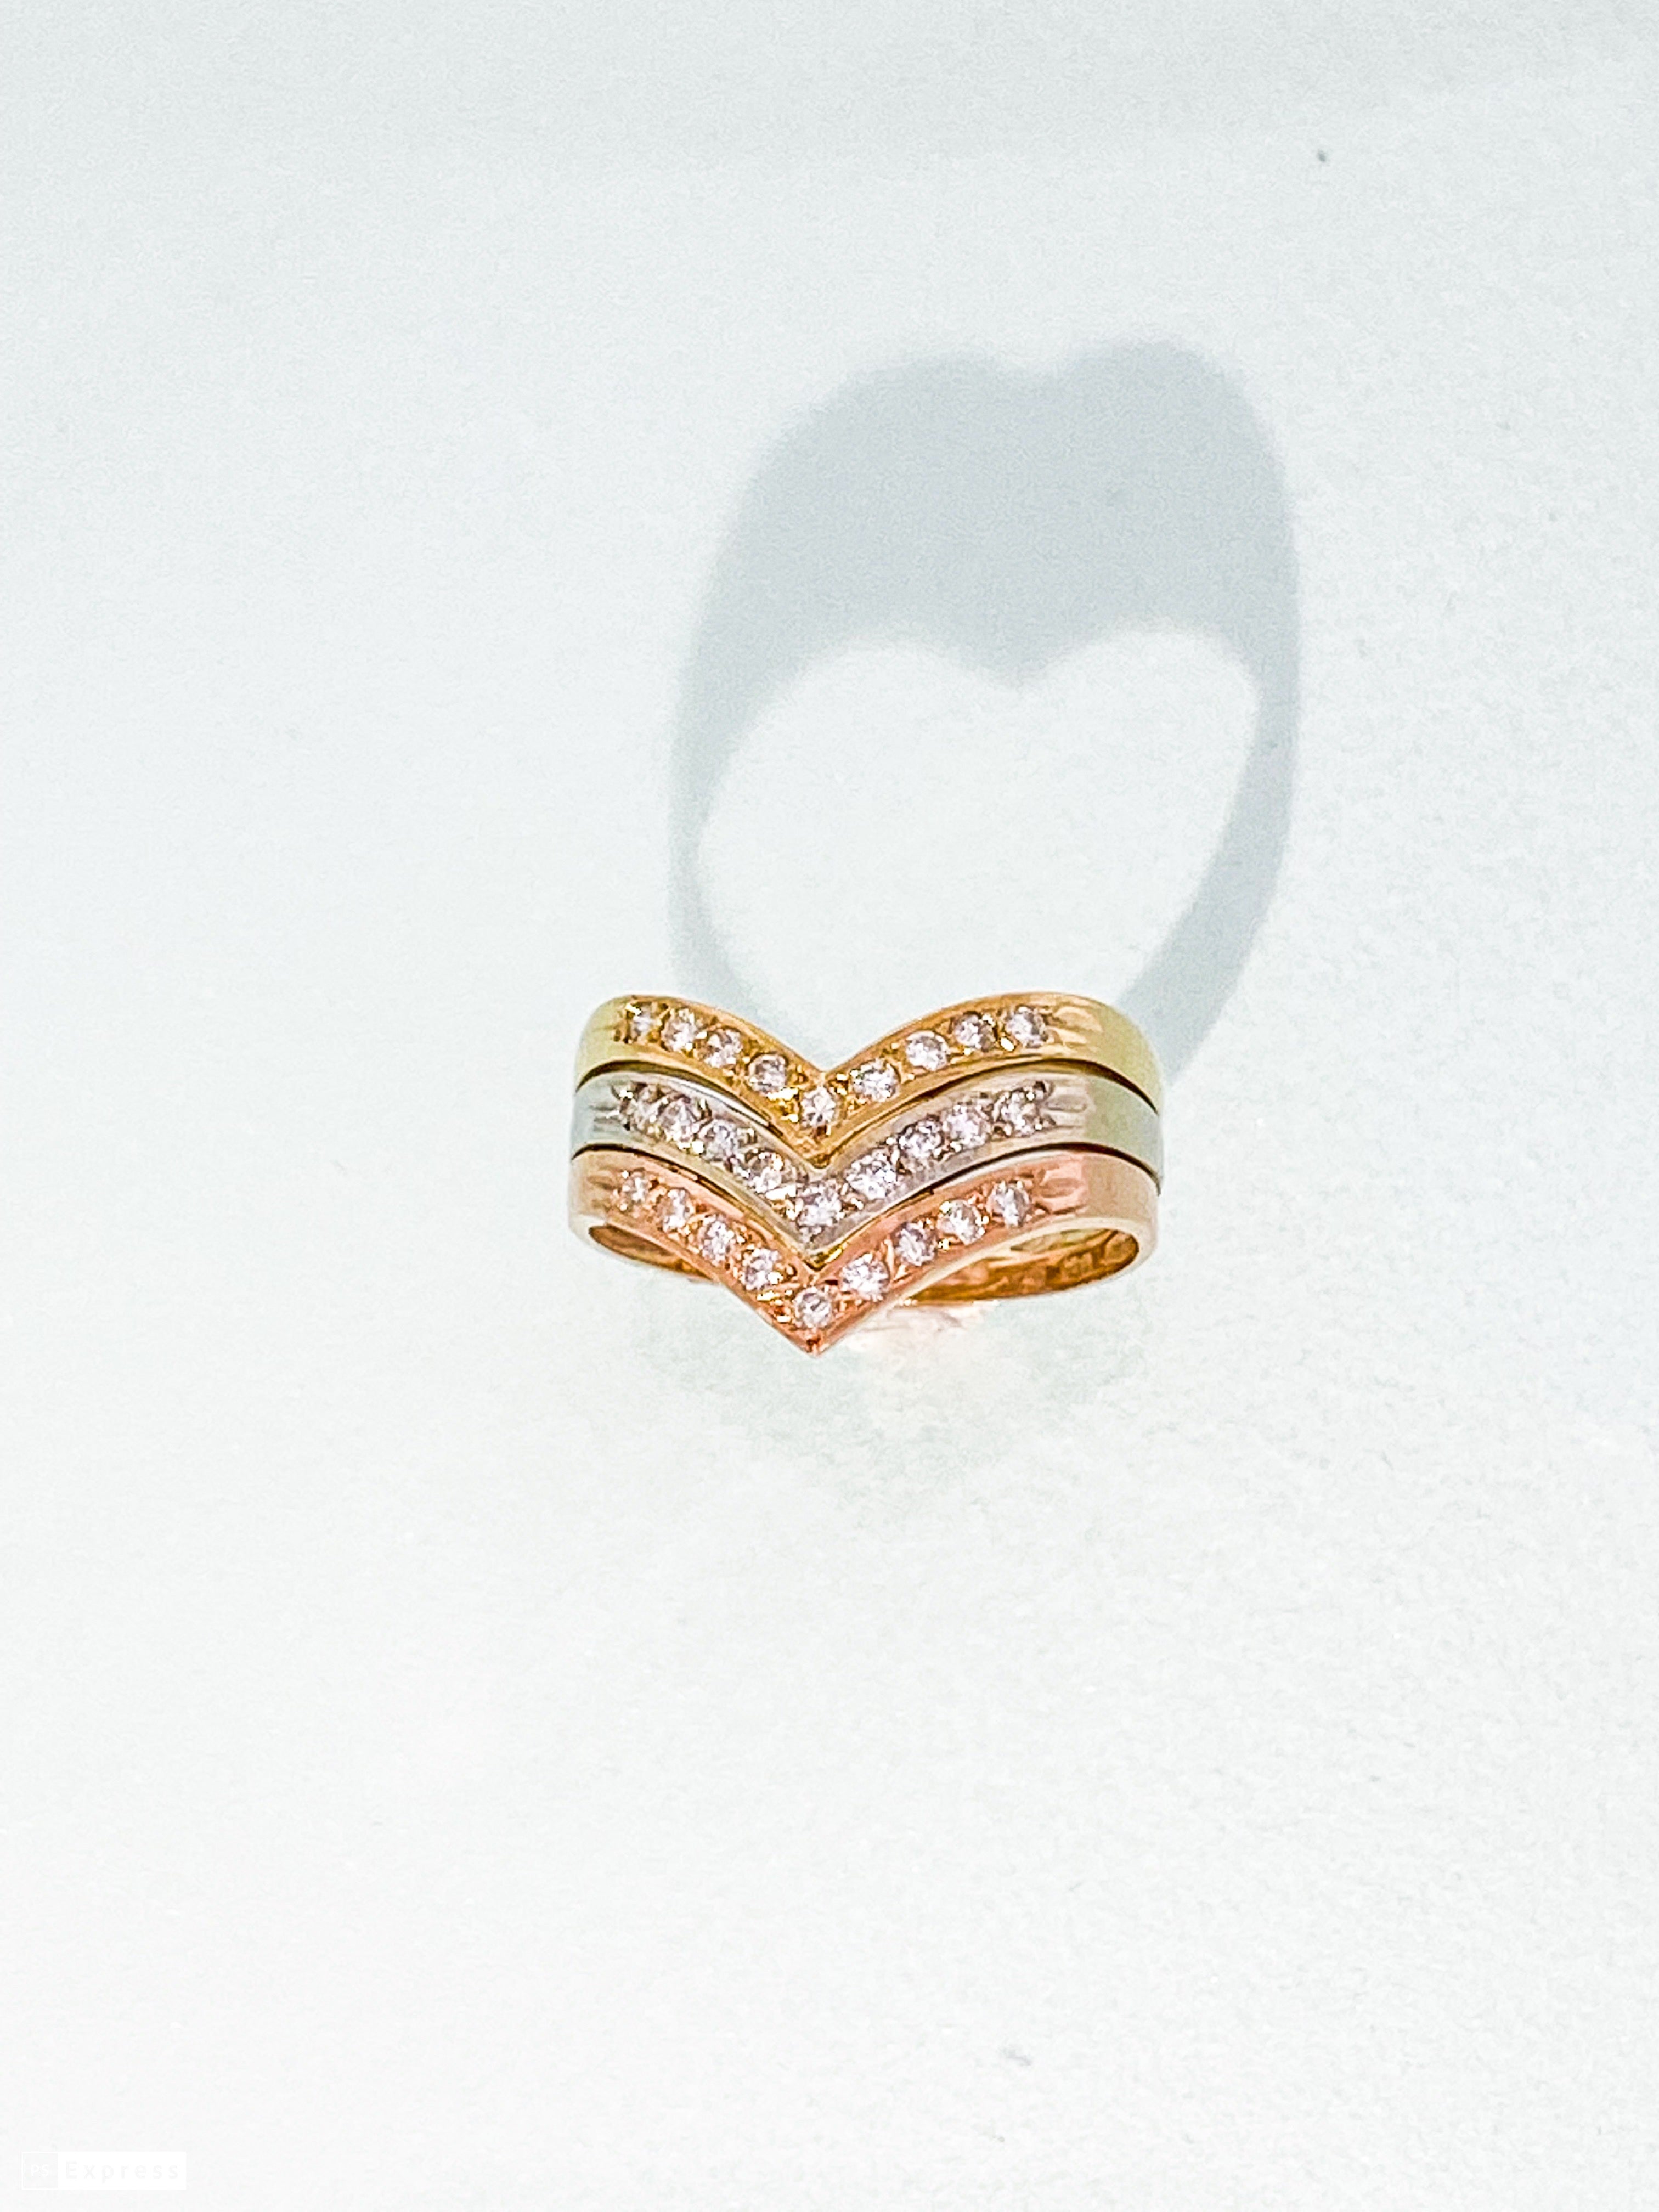 טבעת 14 קארט  וי מחוברת משלוש טבעות משולבת 3 צבעים זהב צהב לבן ואדום משובצת יהלומים